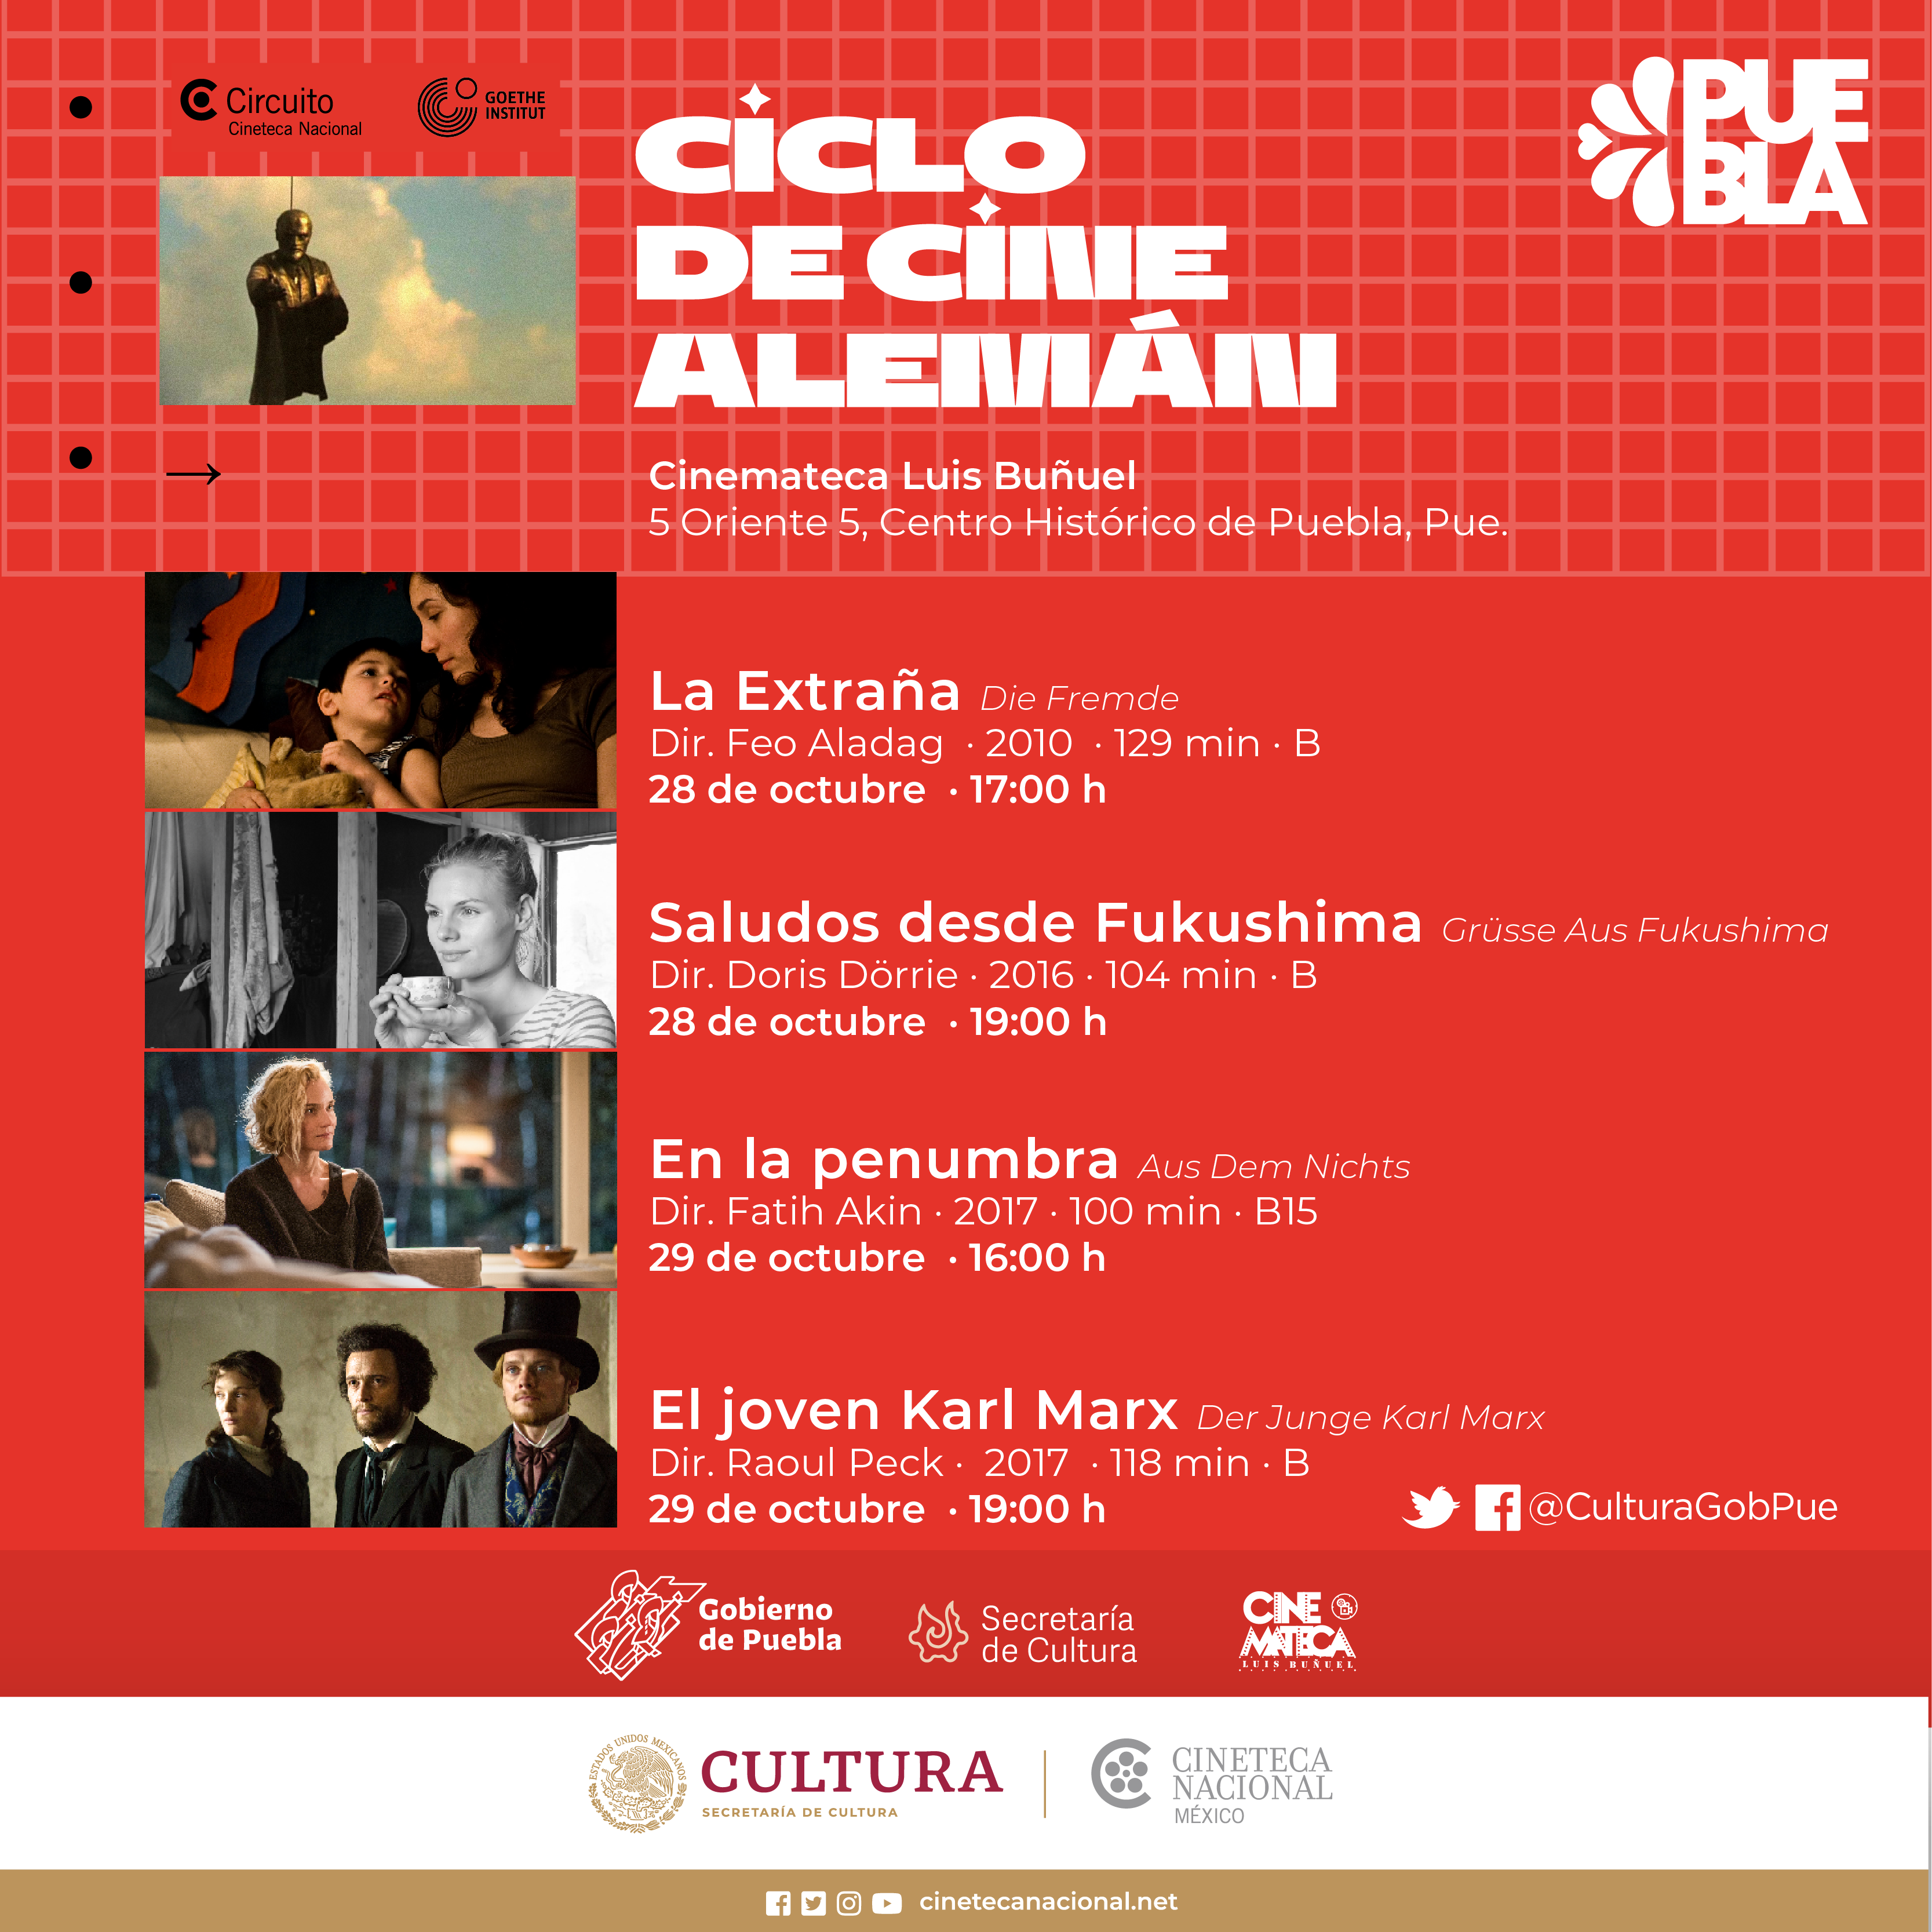 Presentará Cultura “Ciclo de Cine Alemán” en Cinemateca “Luis Buñuel”